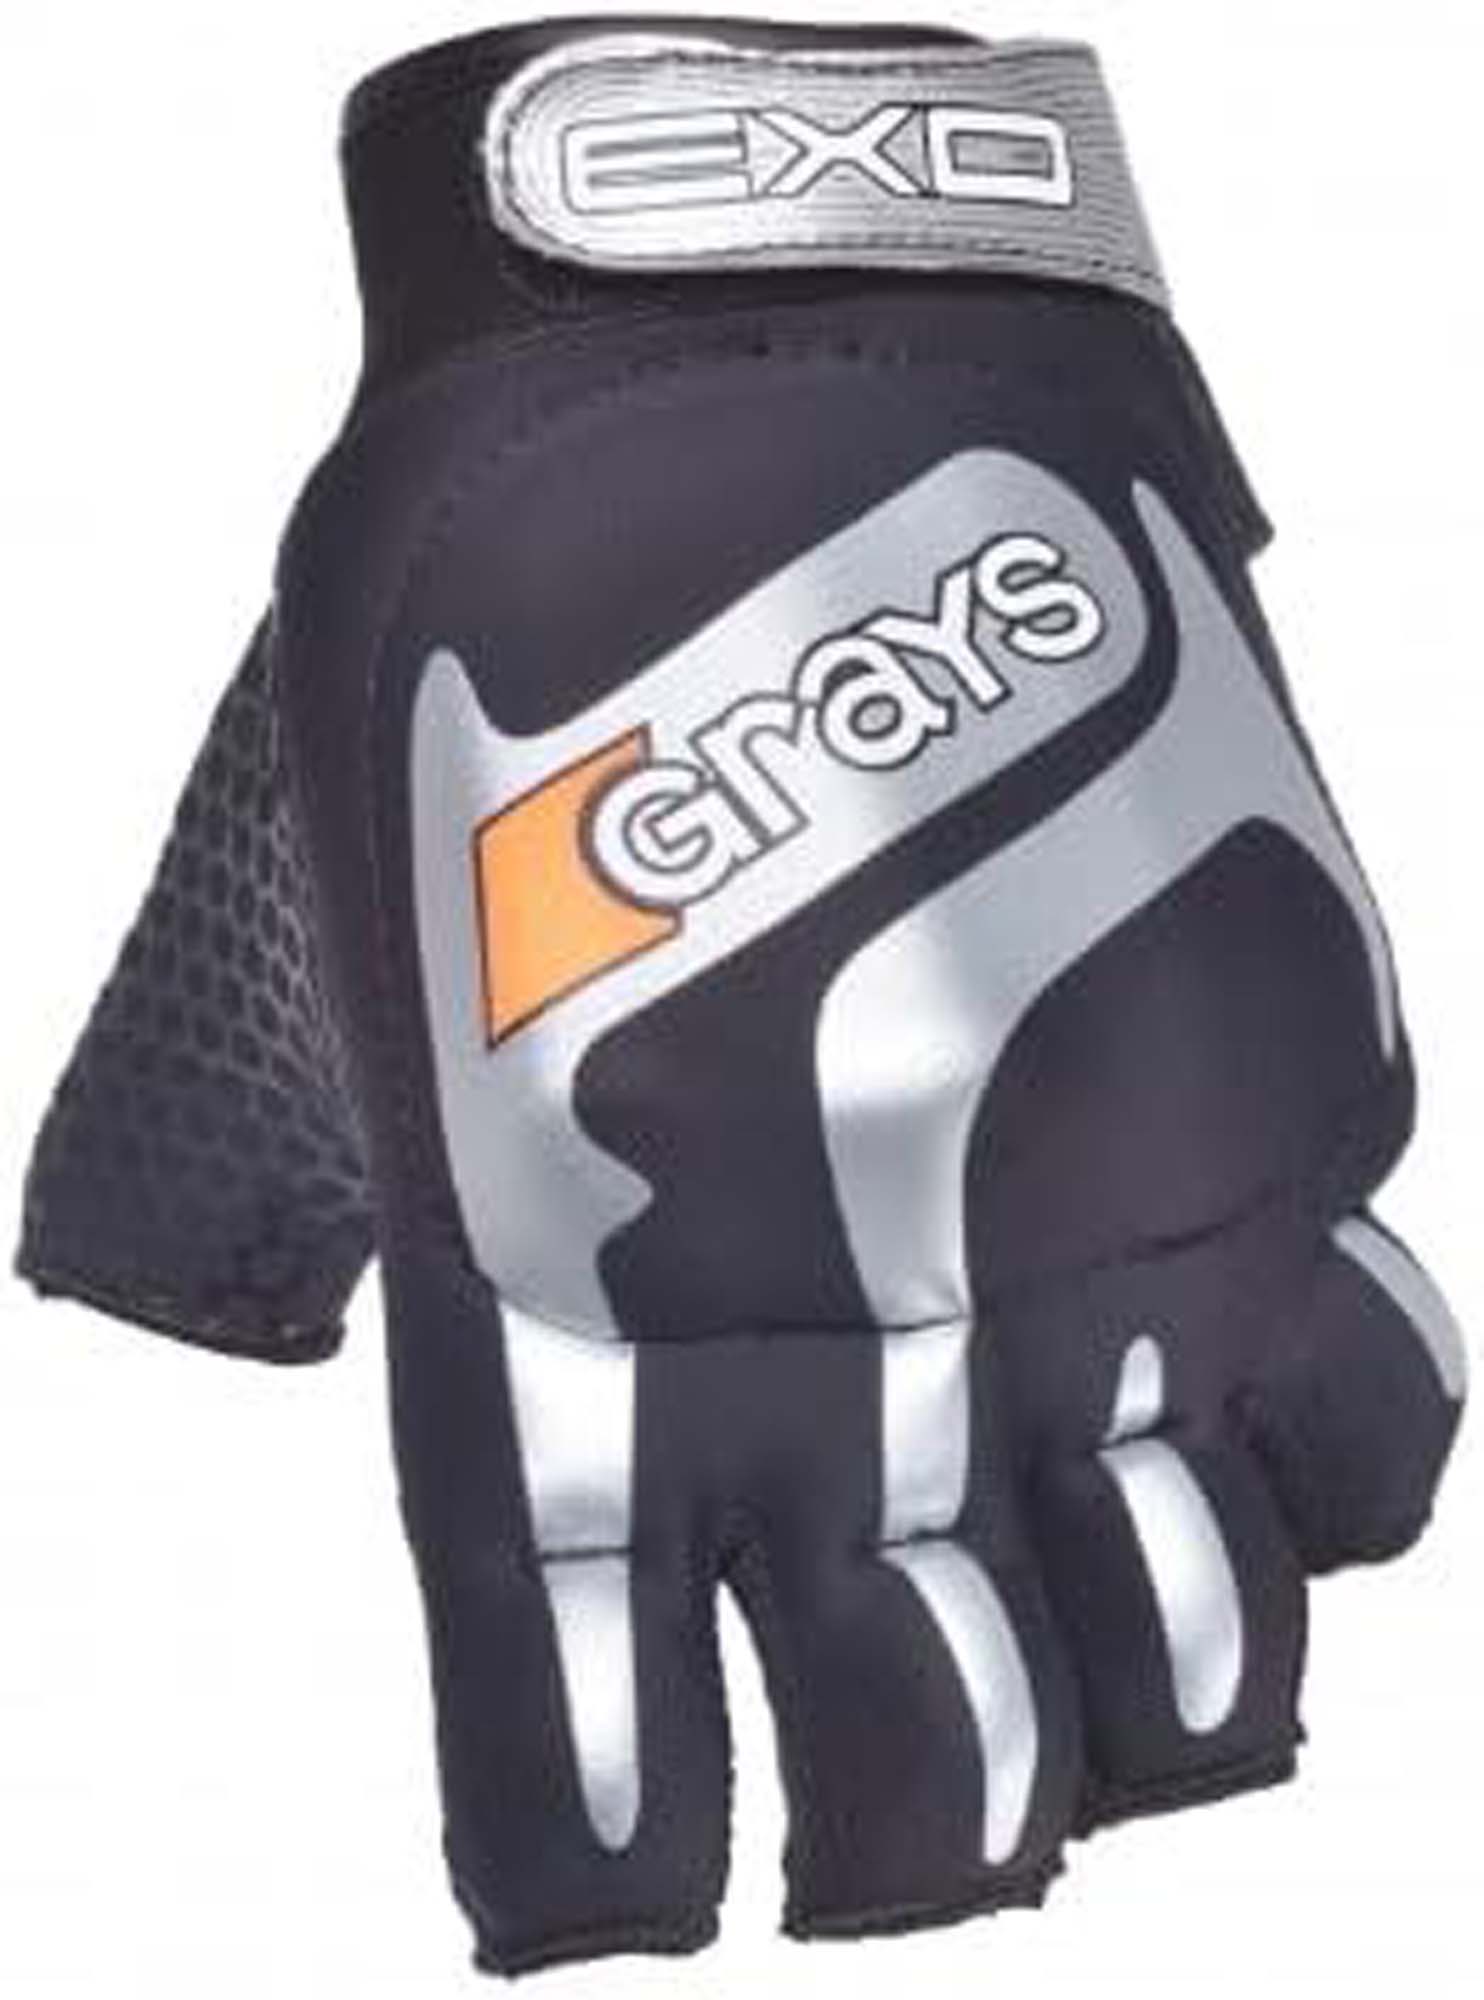 grays exo glove